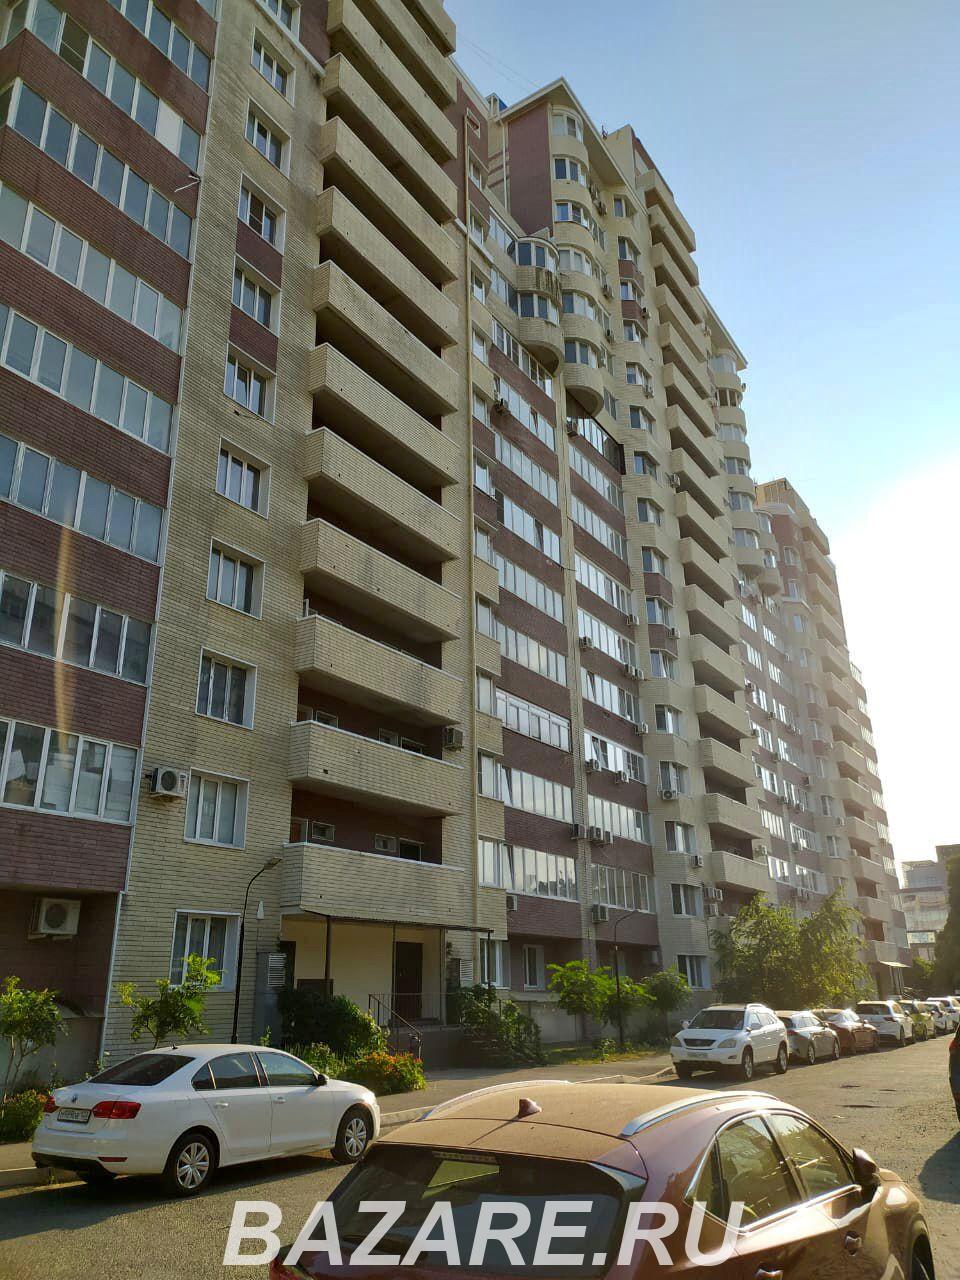 Продаю 1-комн квартиру, 50 кв м, Краснодар